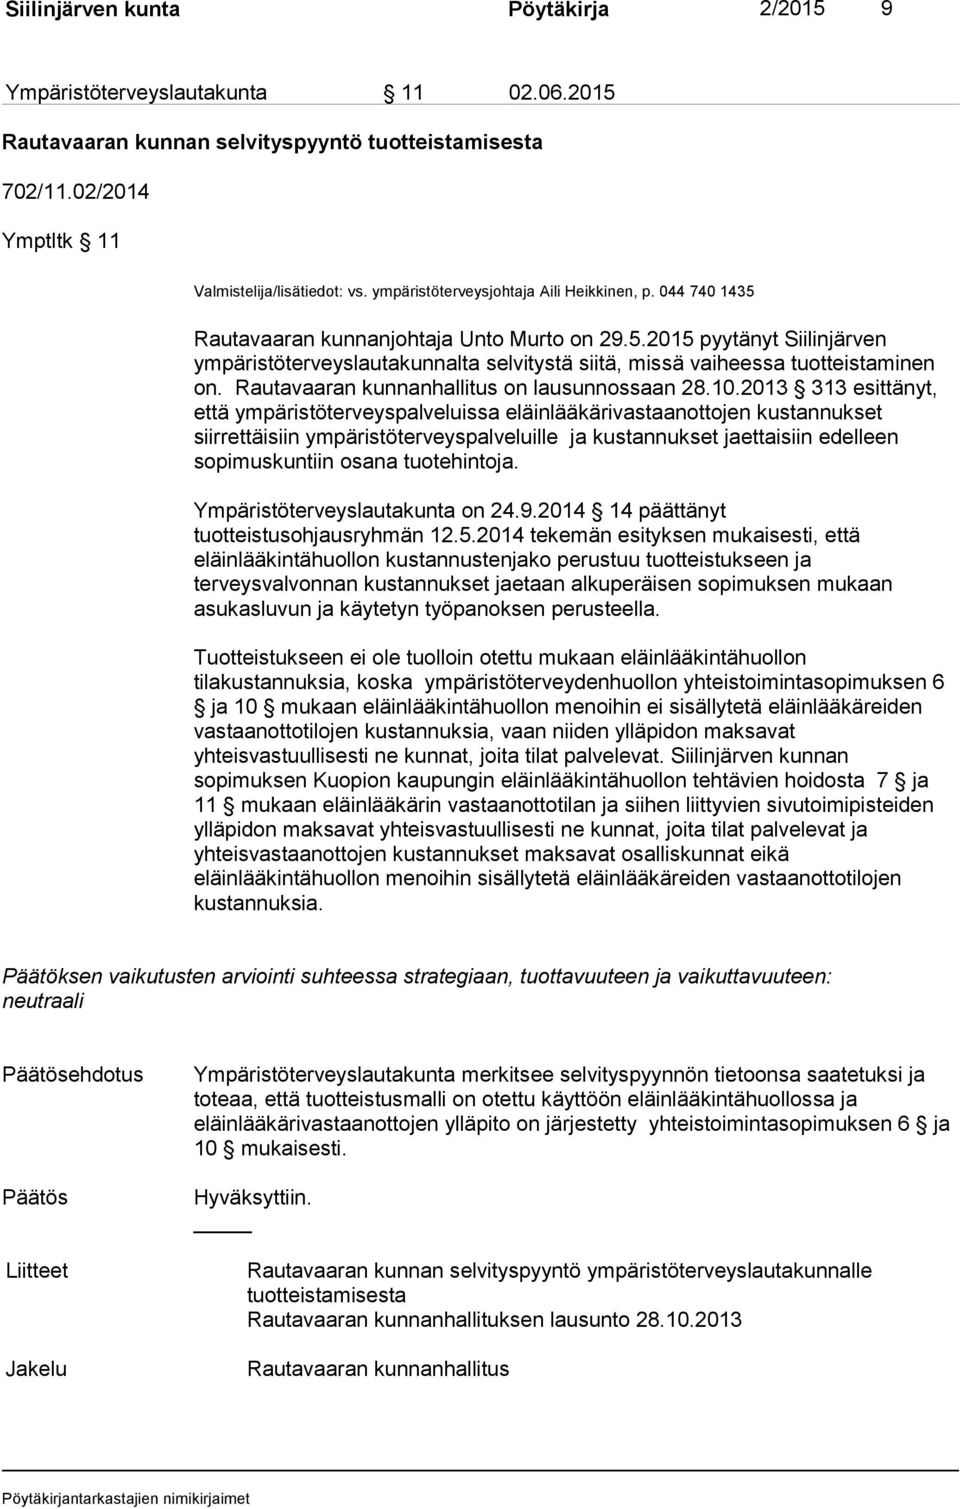 Rautavaaran kunnanhallitus on lausunnossaan 28.10.